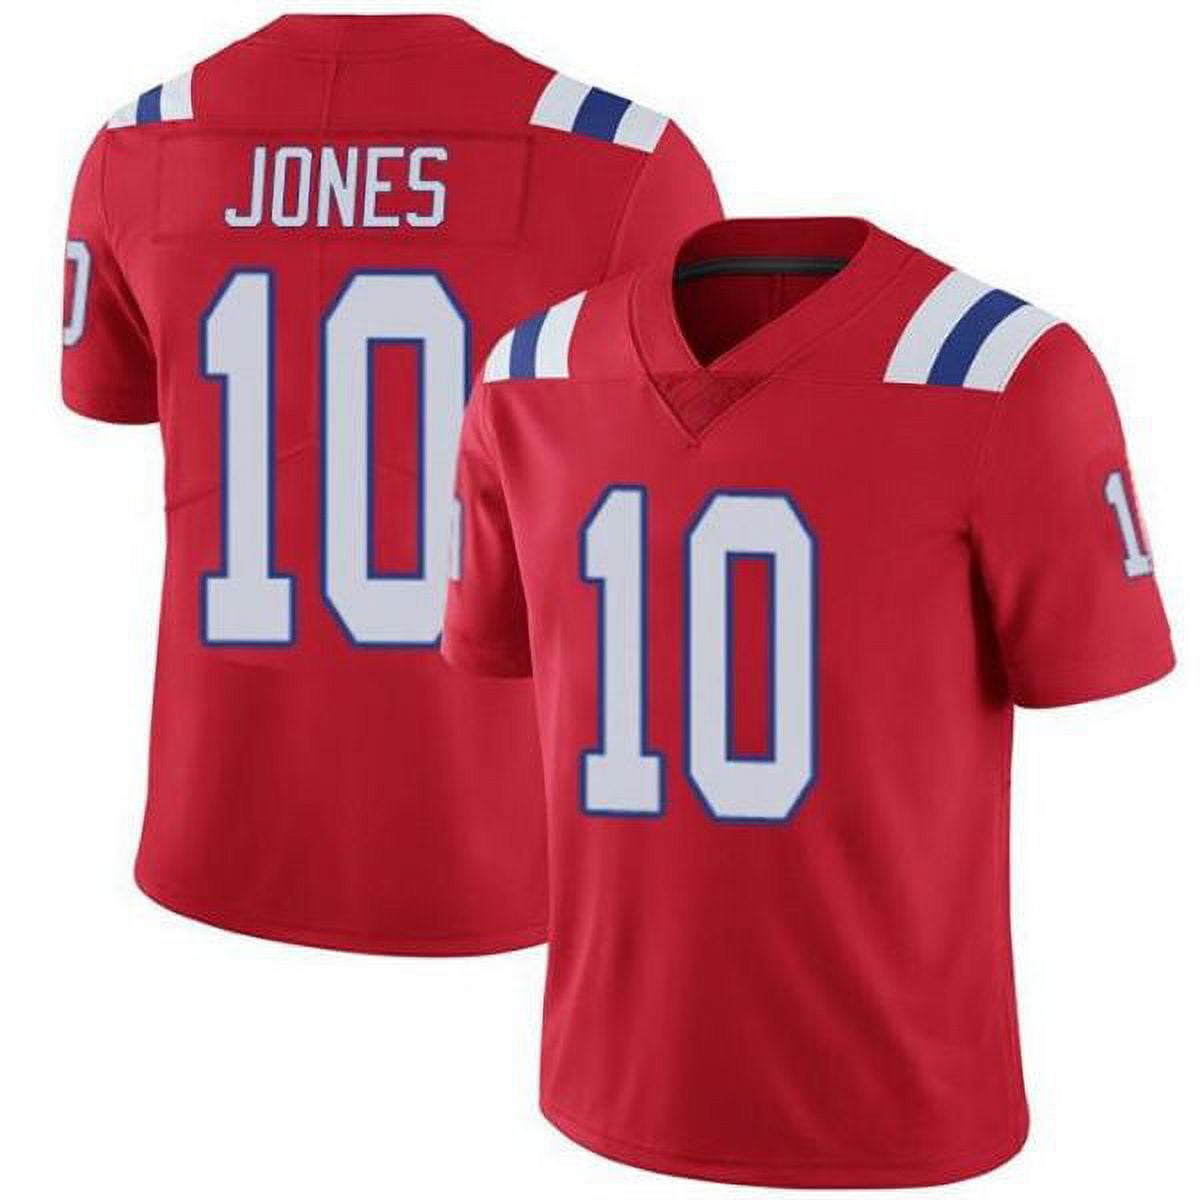 Jones Charlie replica jersey